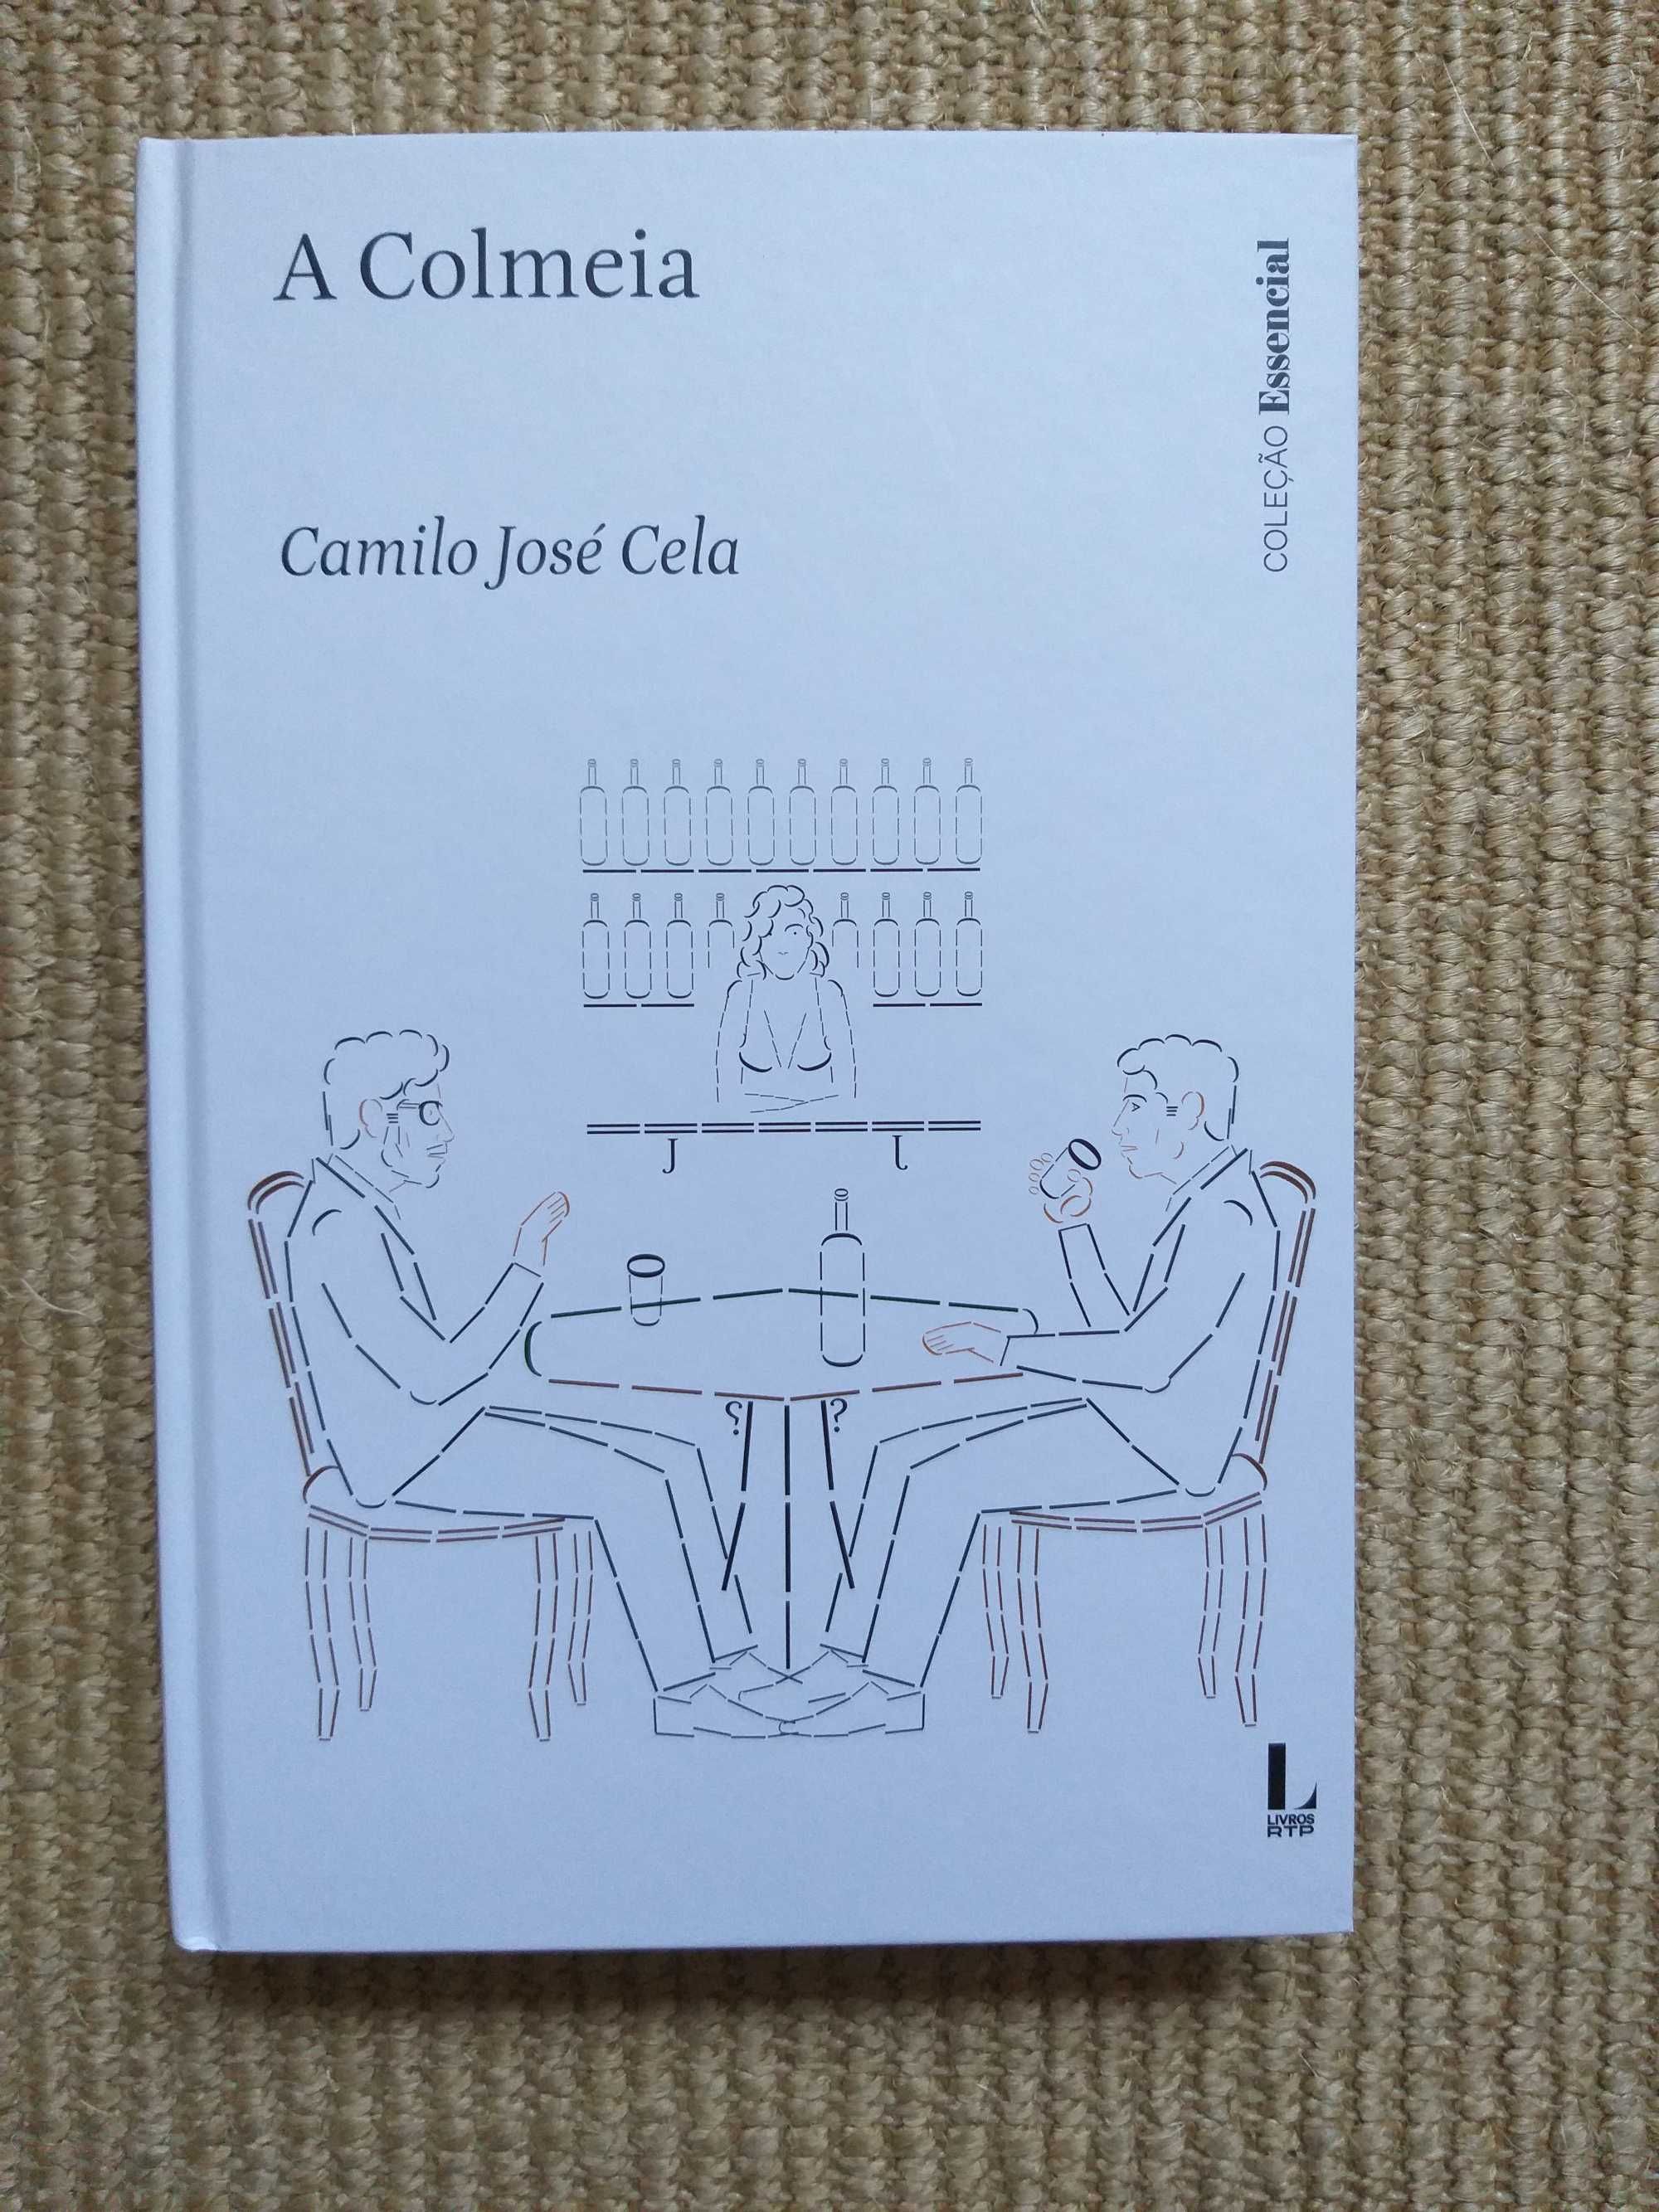 Livro "A Colmeia", de Camilo José Cela (Coleção Essencial)